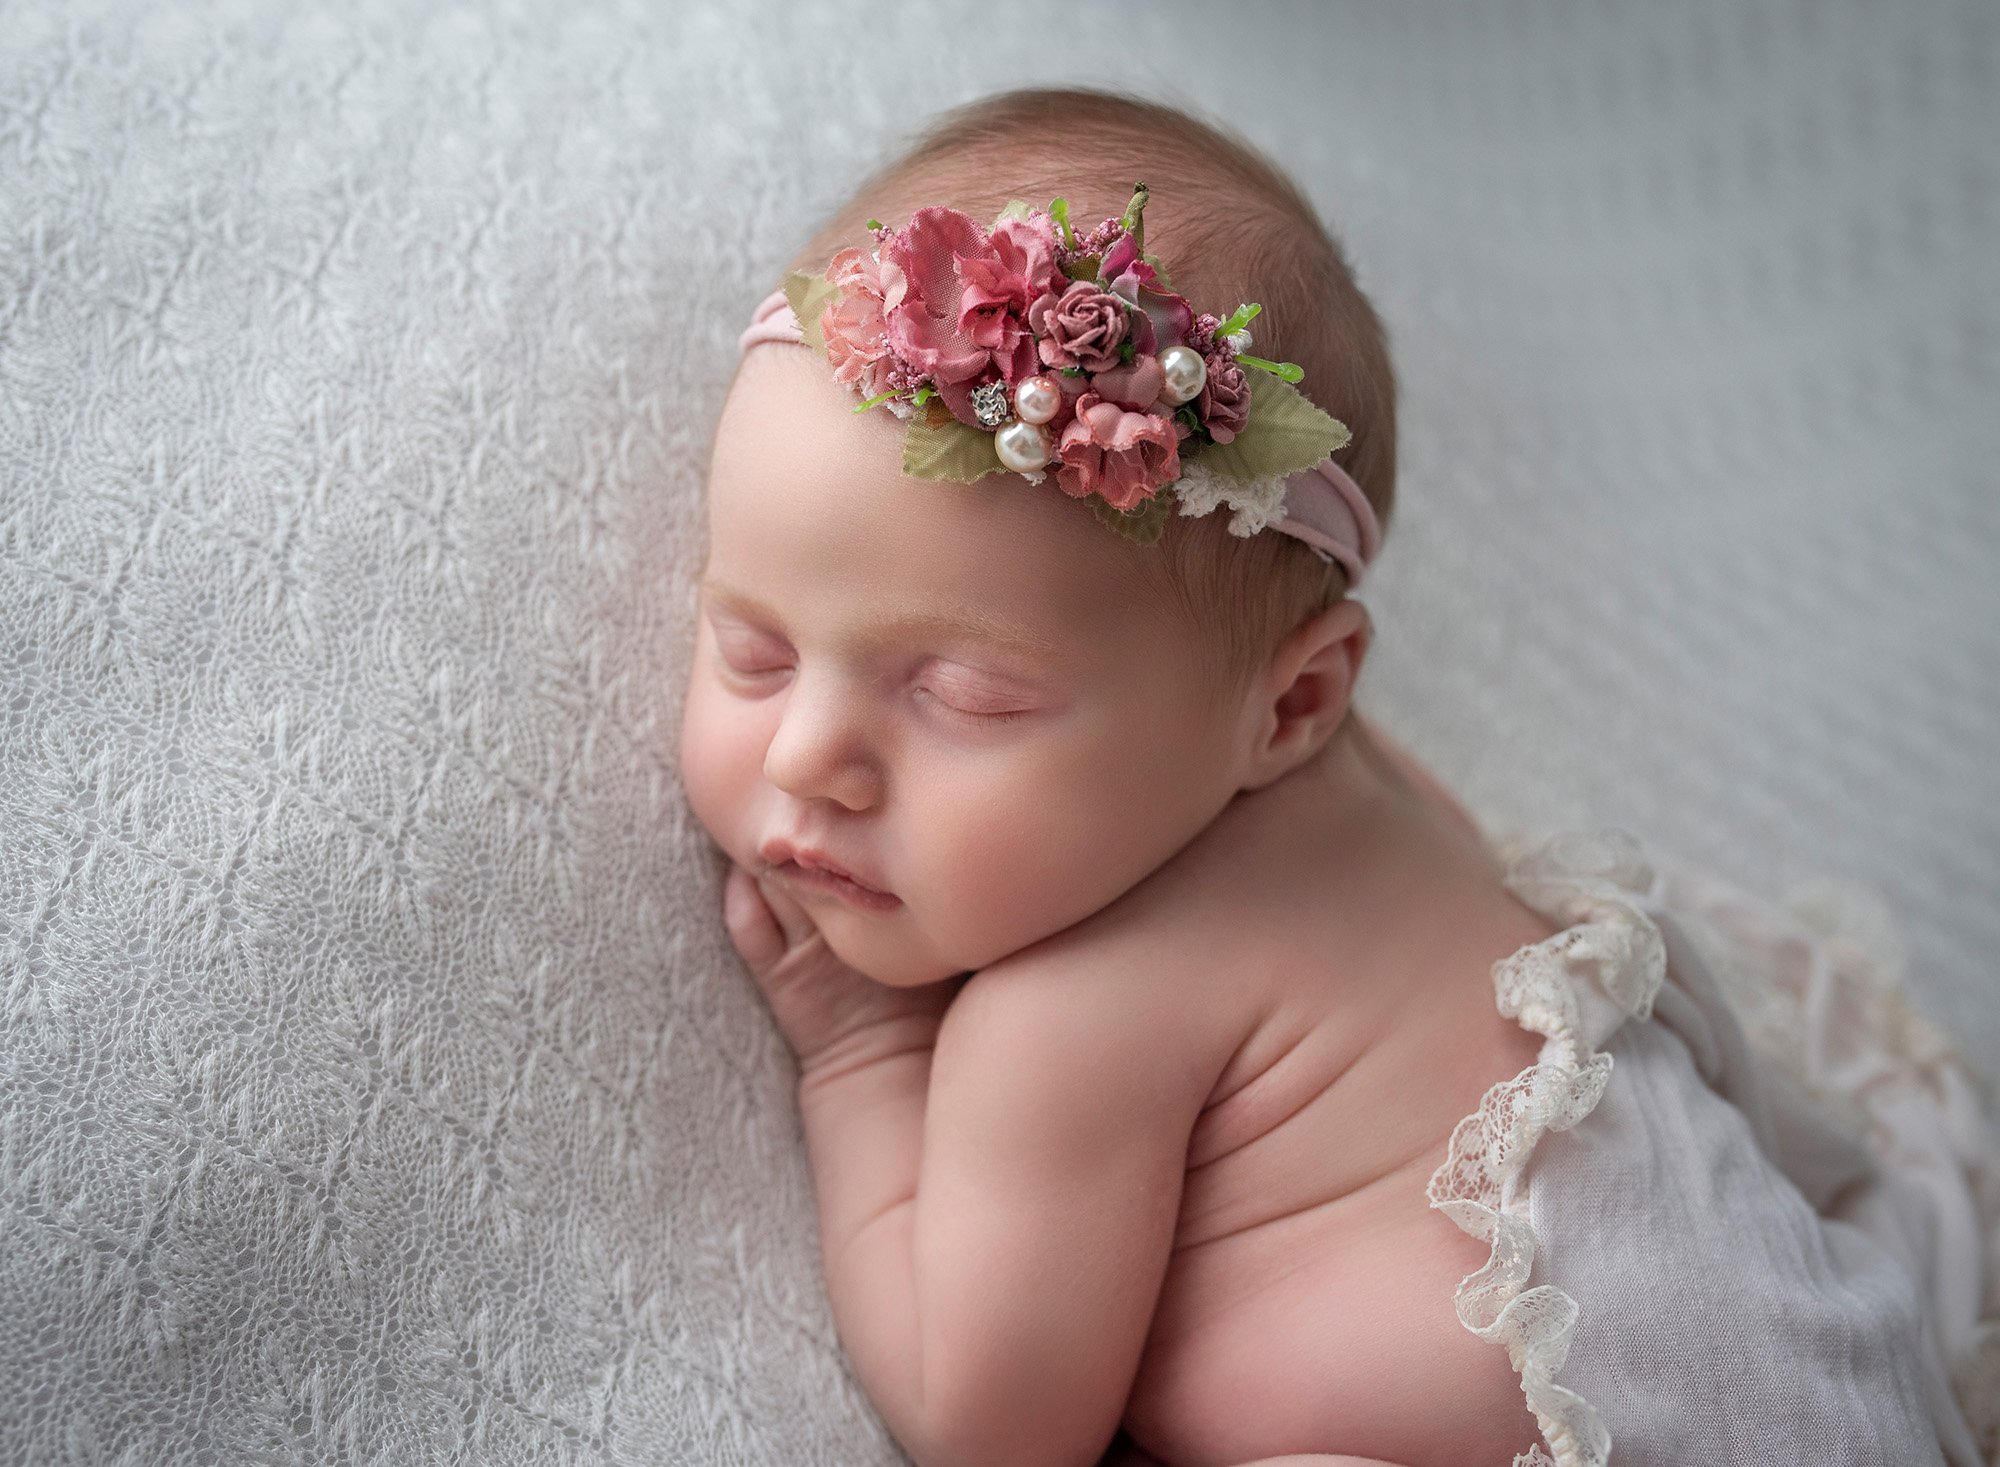 Cream Color Baby Photoshoot